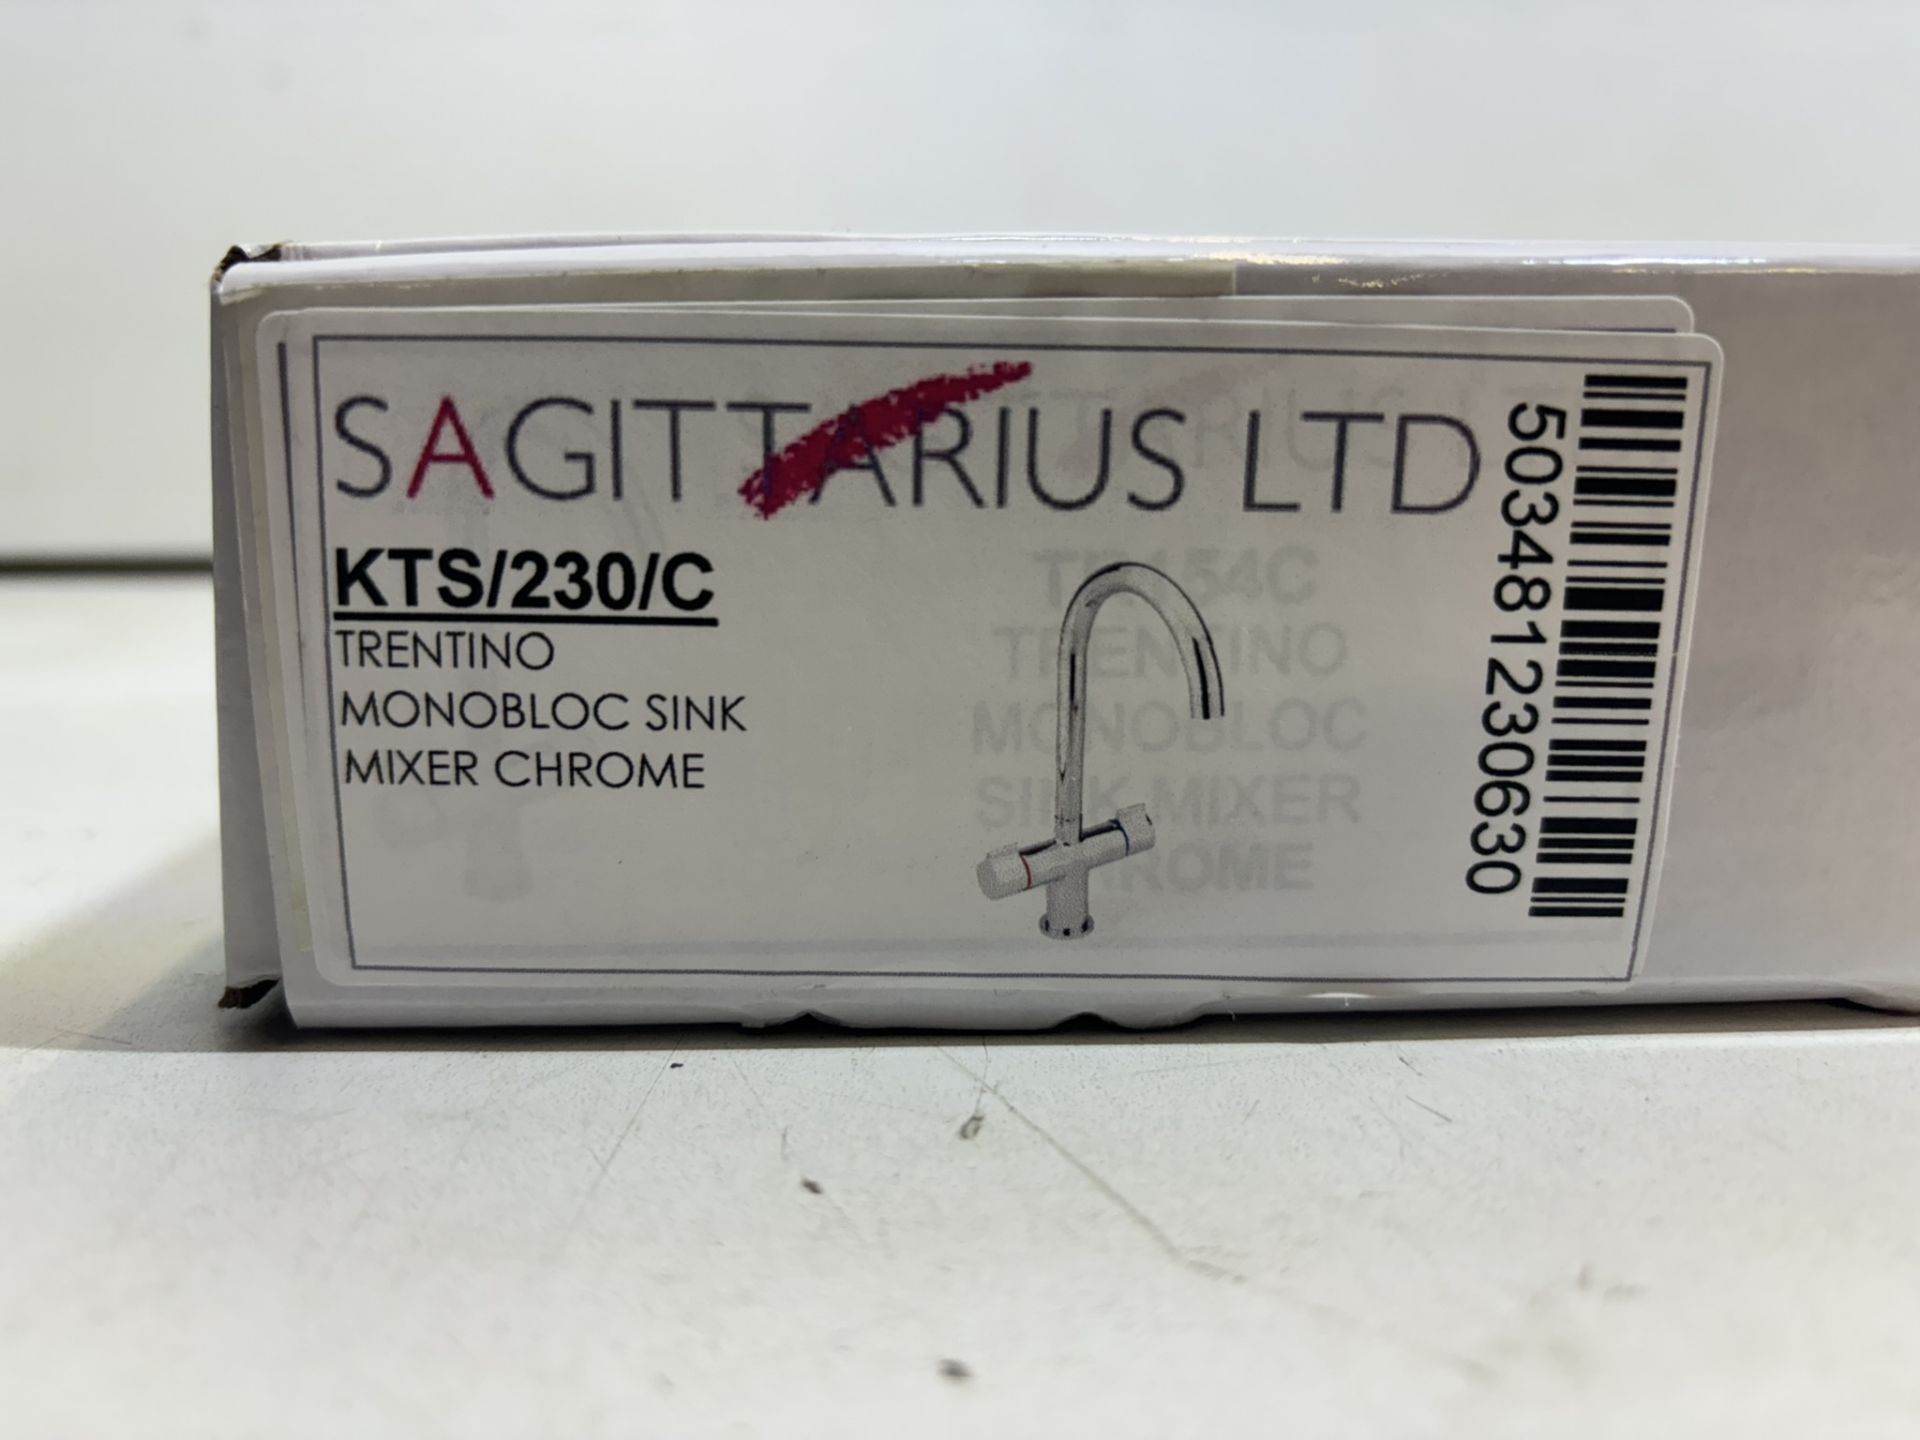 Sagittarius Ltd KTS/230/C Torentino Monobloc Sink Mixer Chrome - Image 2 of 4